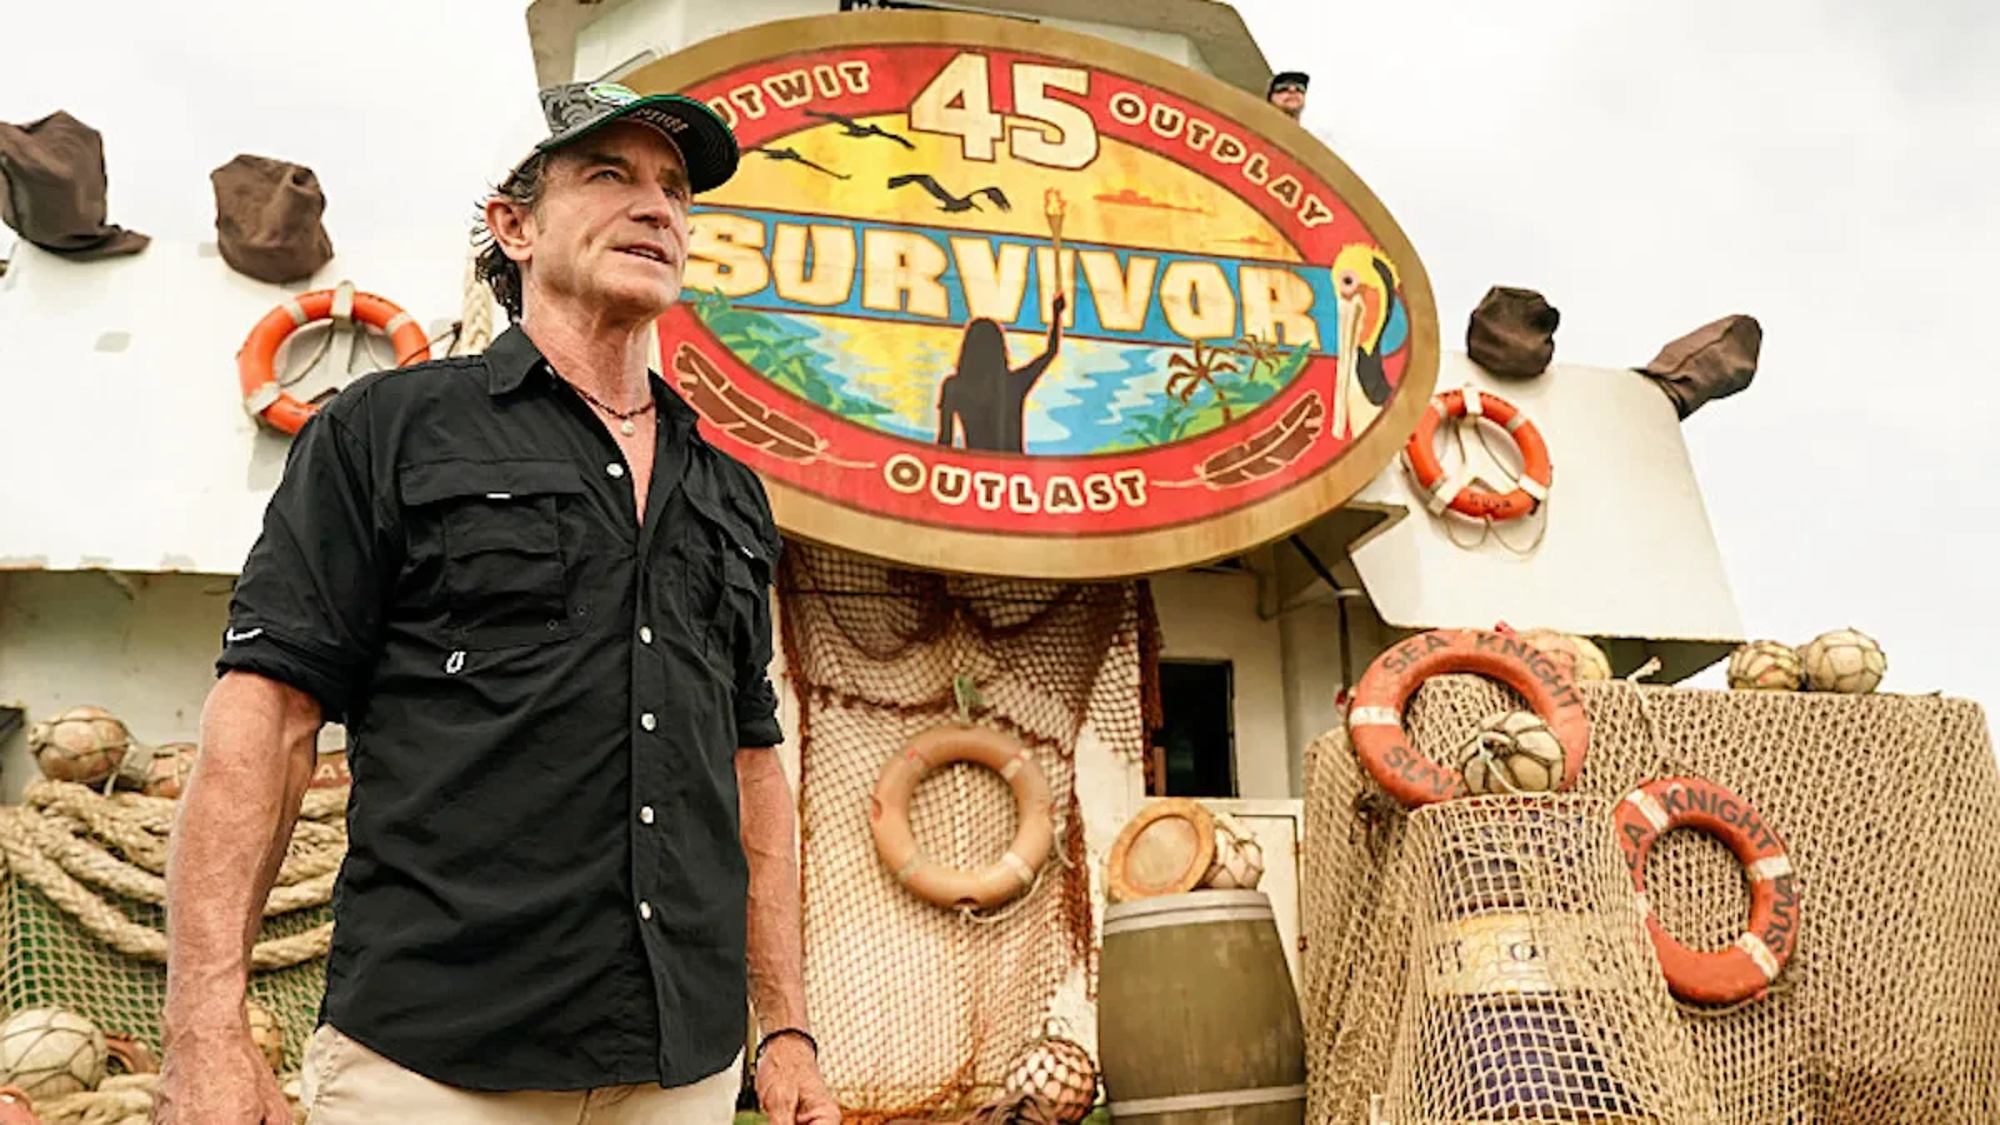 Survivor Season 45 Episodes - Watch on Paramount+